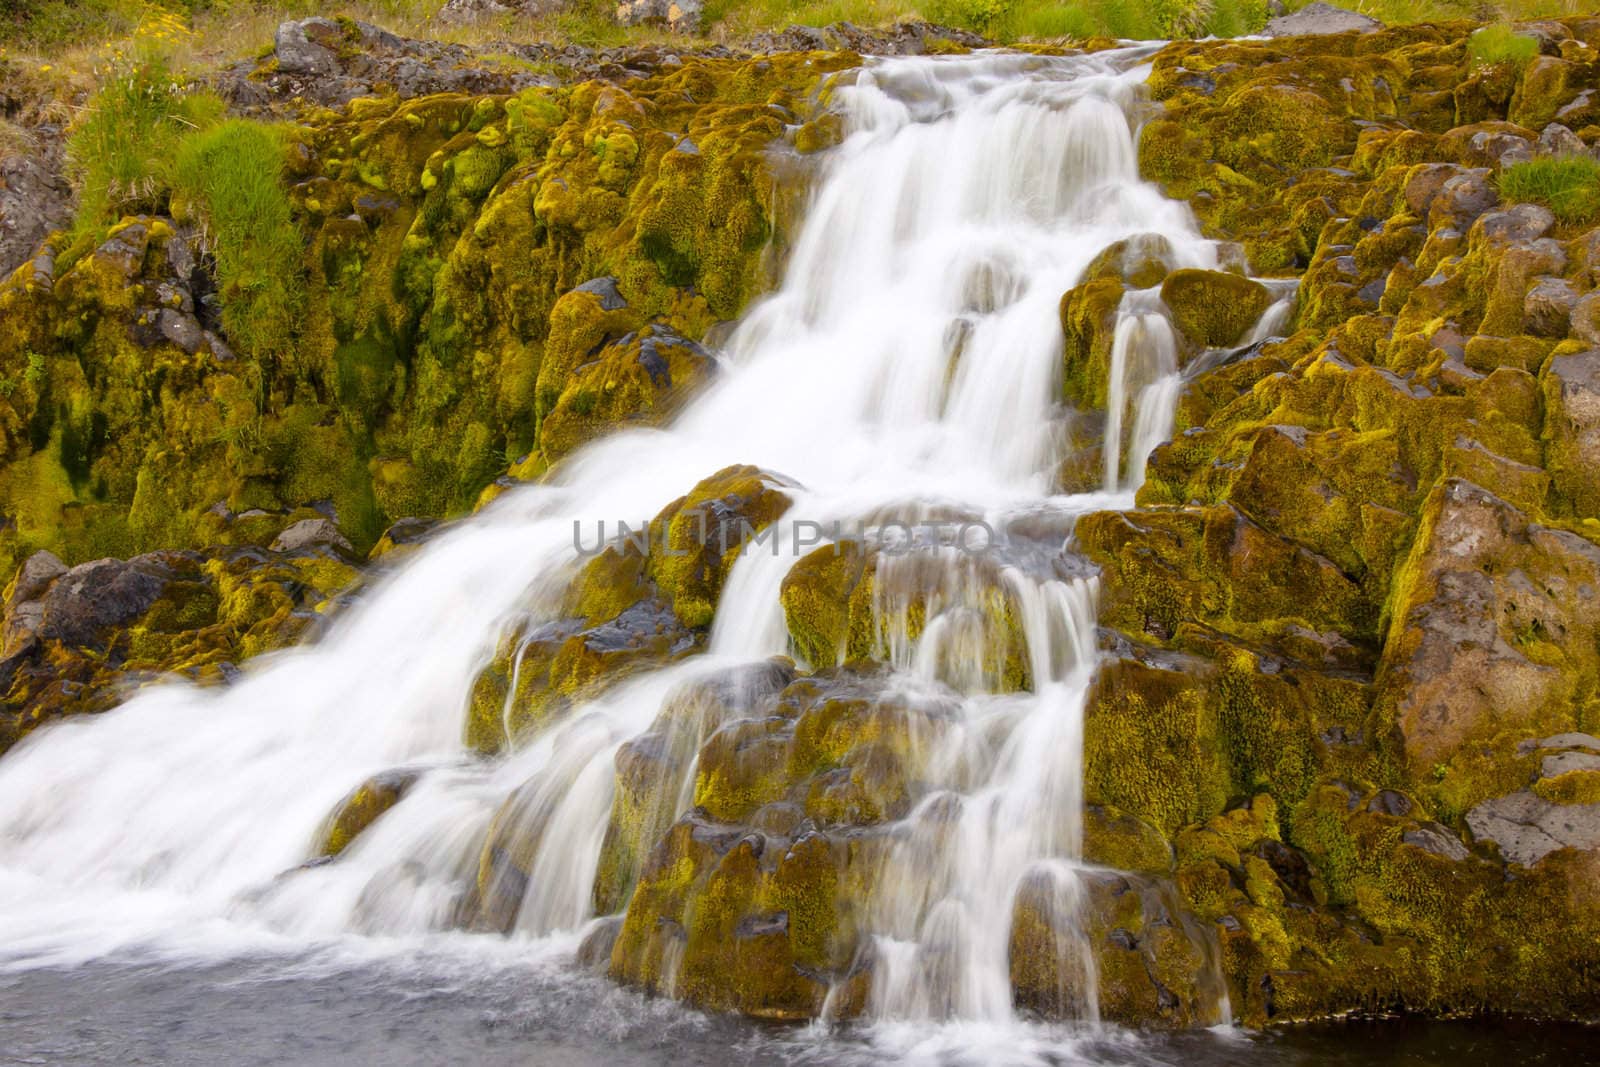 Small part of Dynjandi waterfall - Iceland by parys